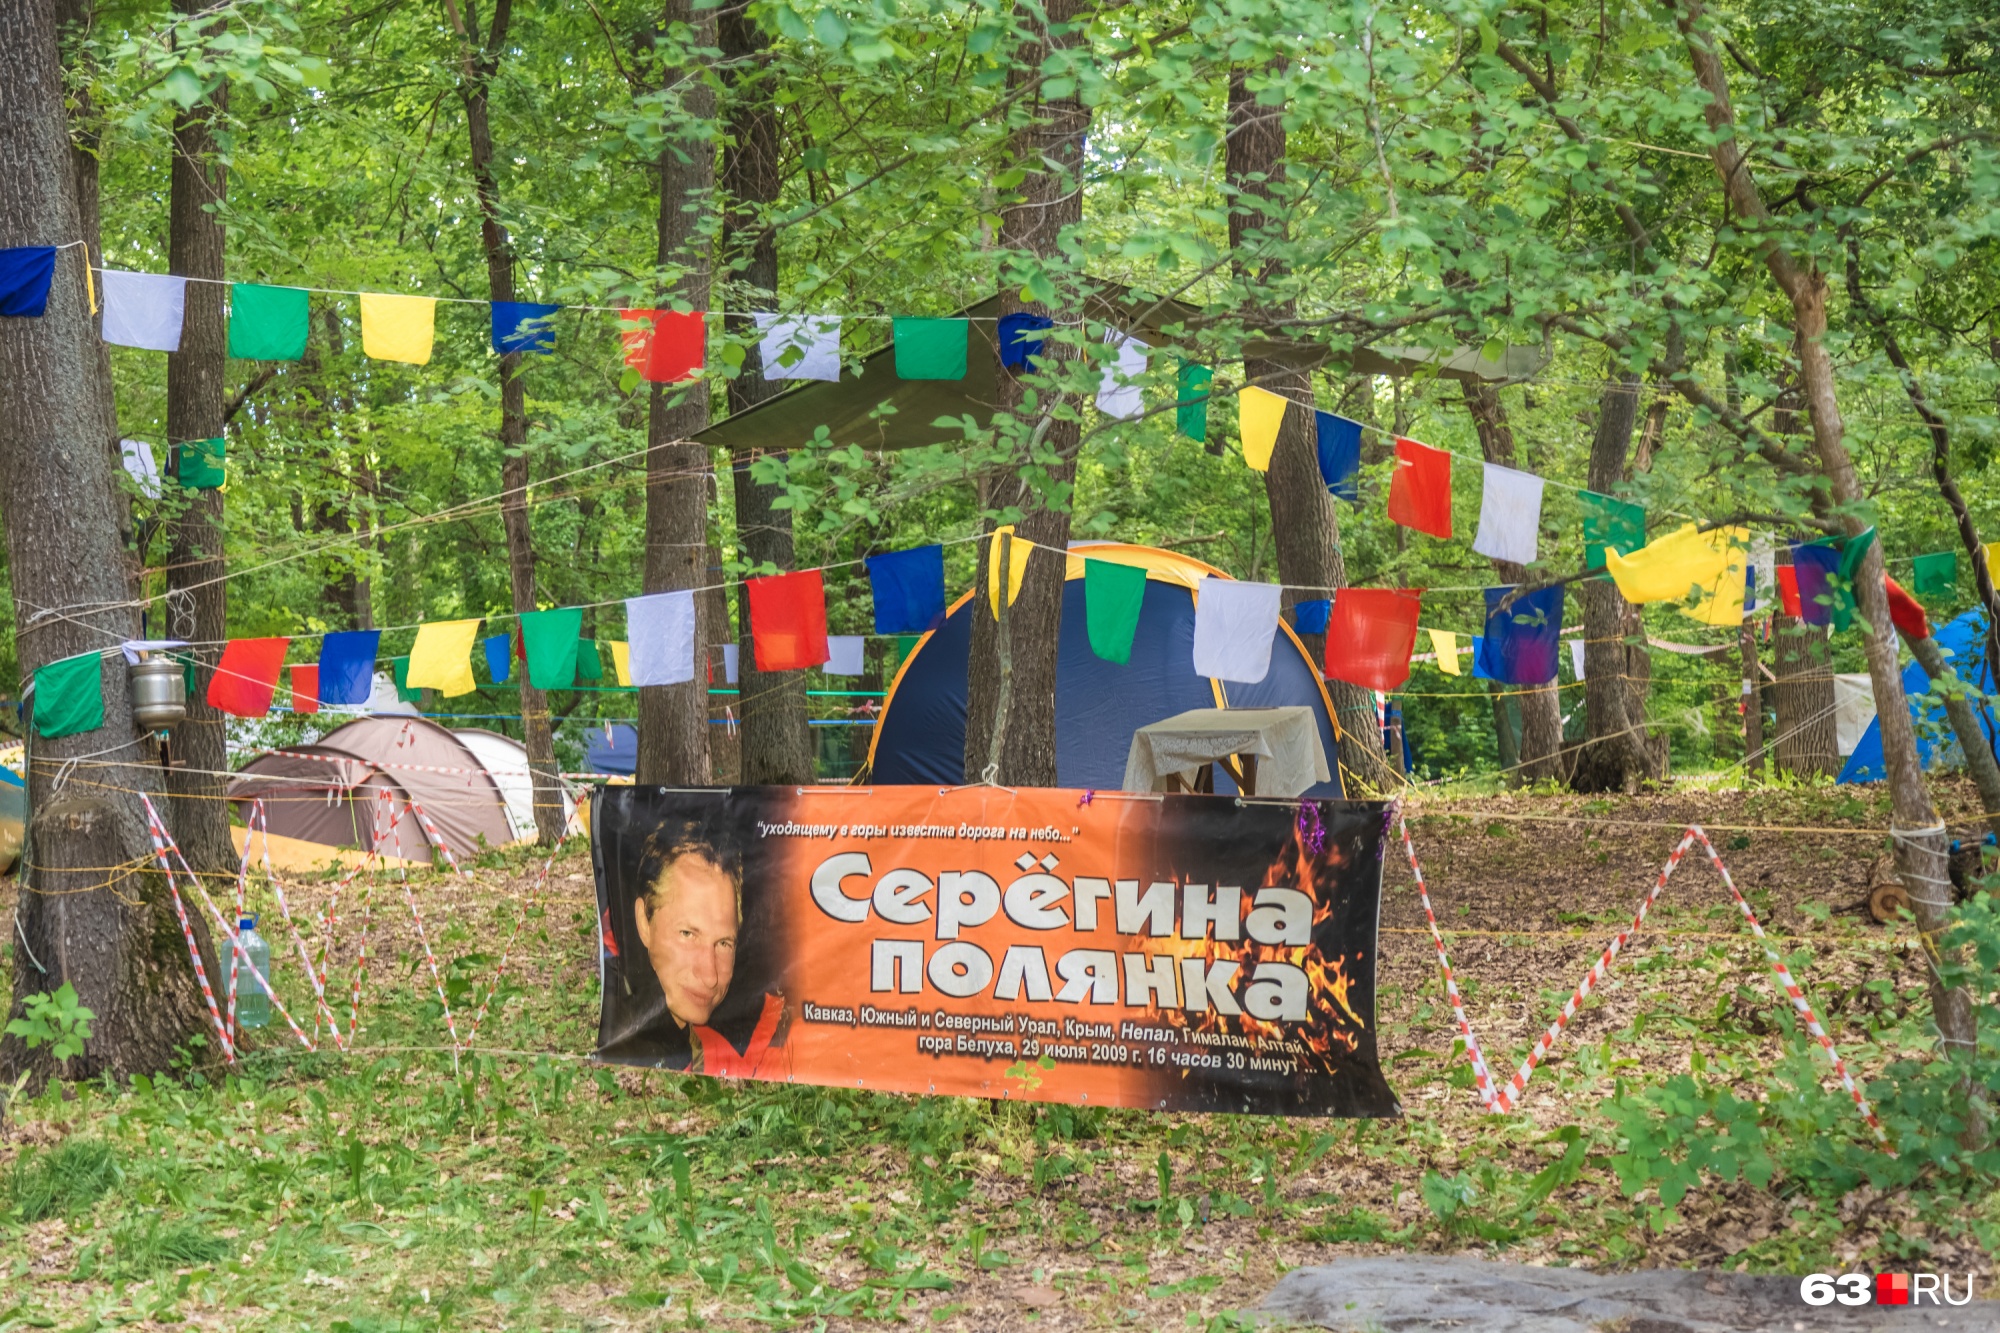 Некоторые гости фестиваля приезжают вместе и объединяются в лагерь